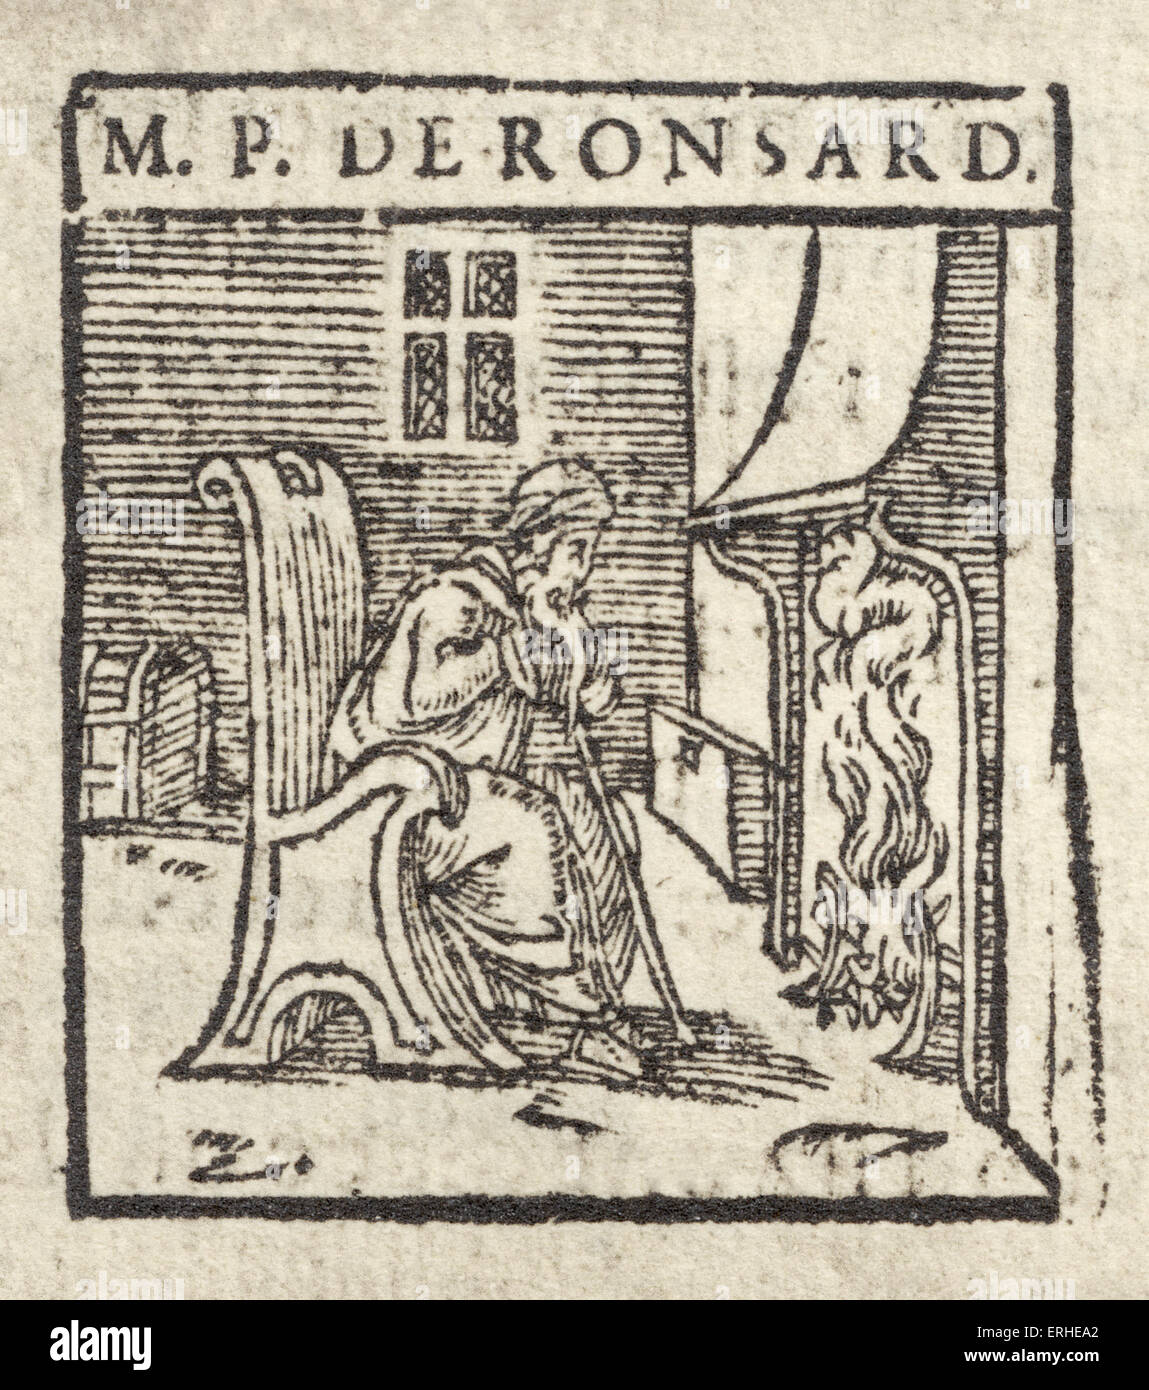 Pierre de Ronsard. Gravure caricature. Poète, poète français nommé royal pour Henri / Henry II Septembre 1524 - Décembre 1585 Banque D'Images